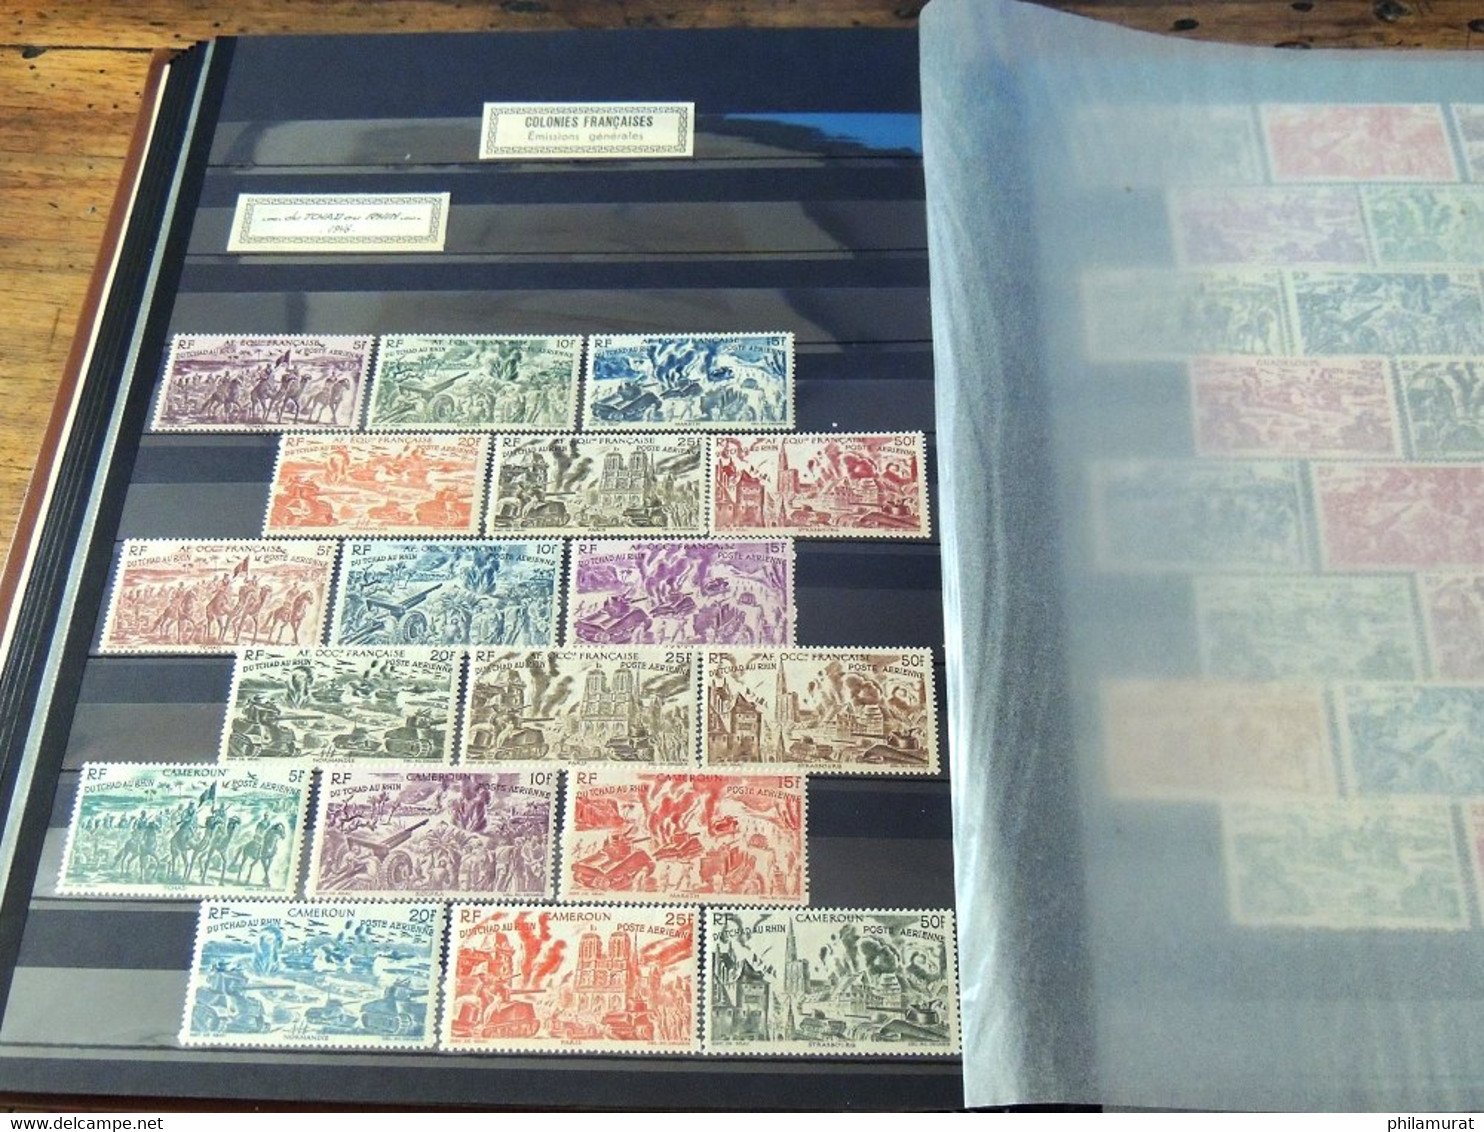 VRAC France 1876/2000 + Colonies, des centaines de timbres neufs et oblitérés